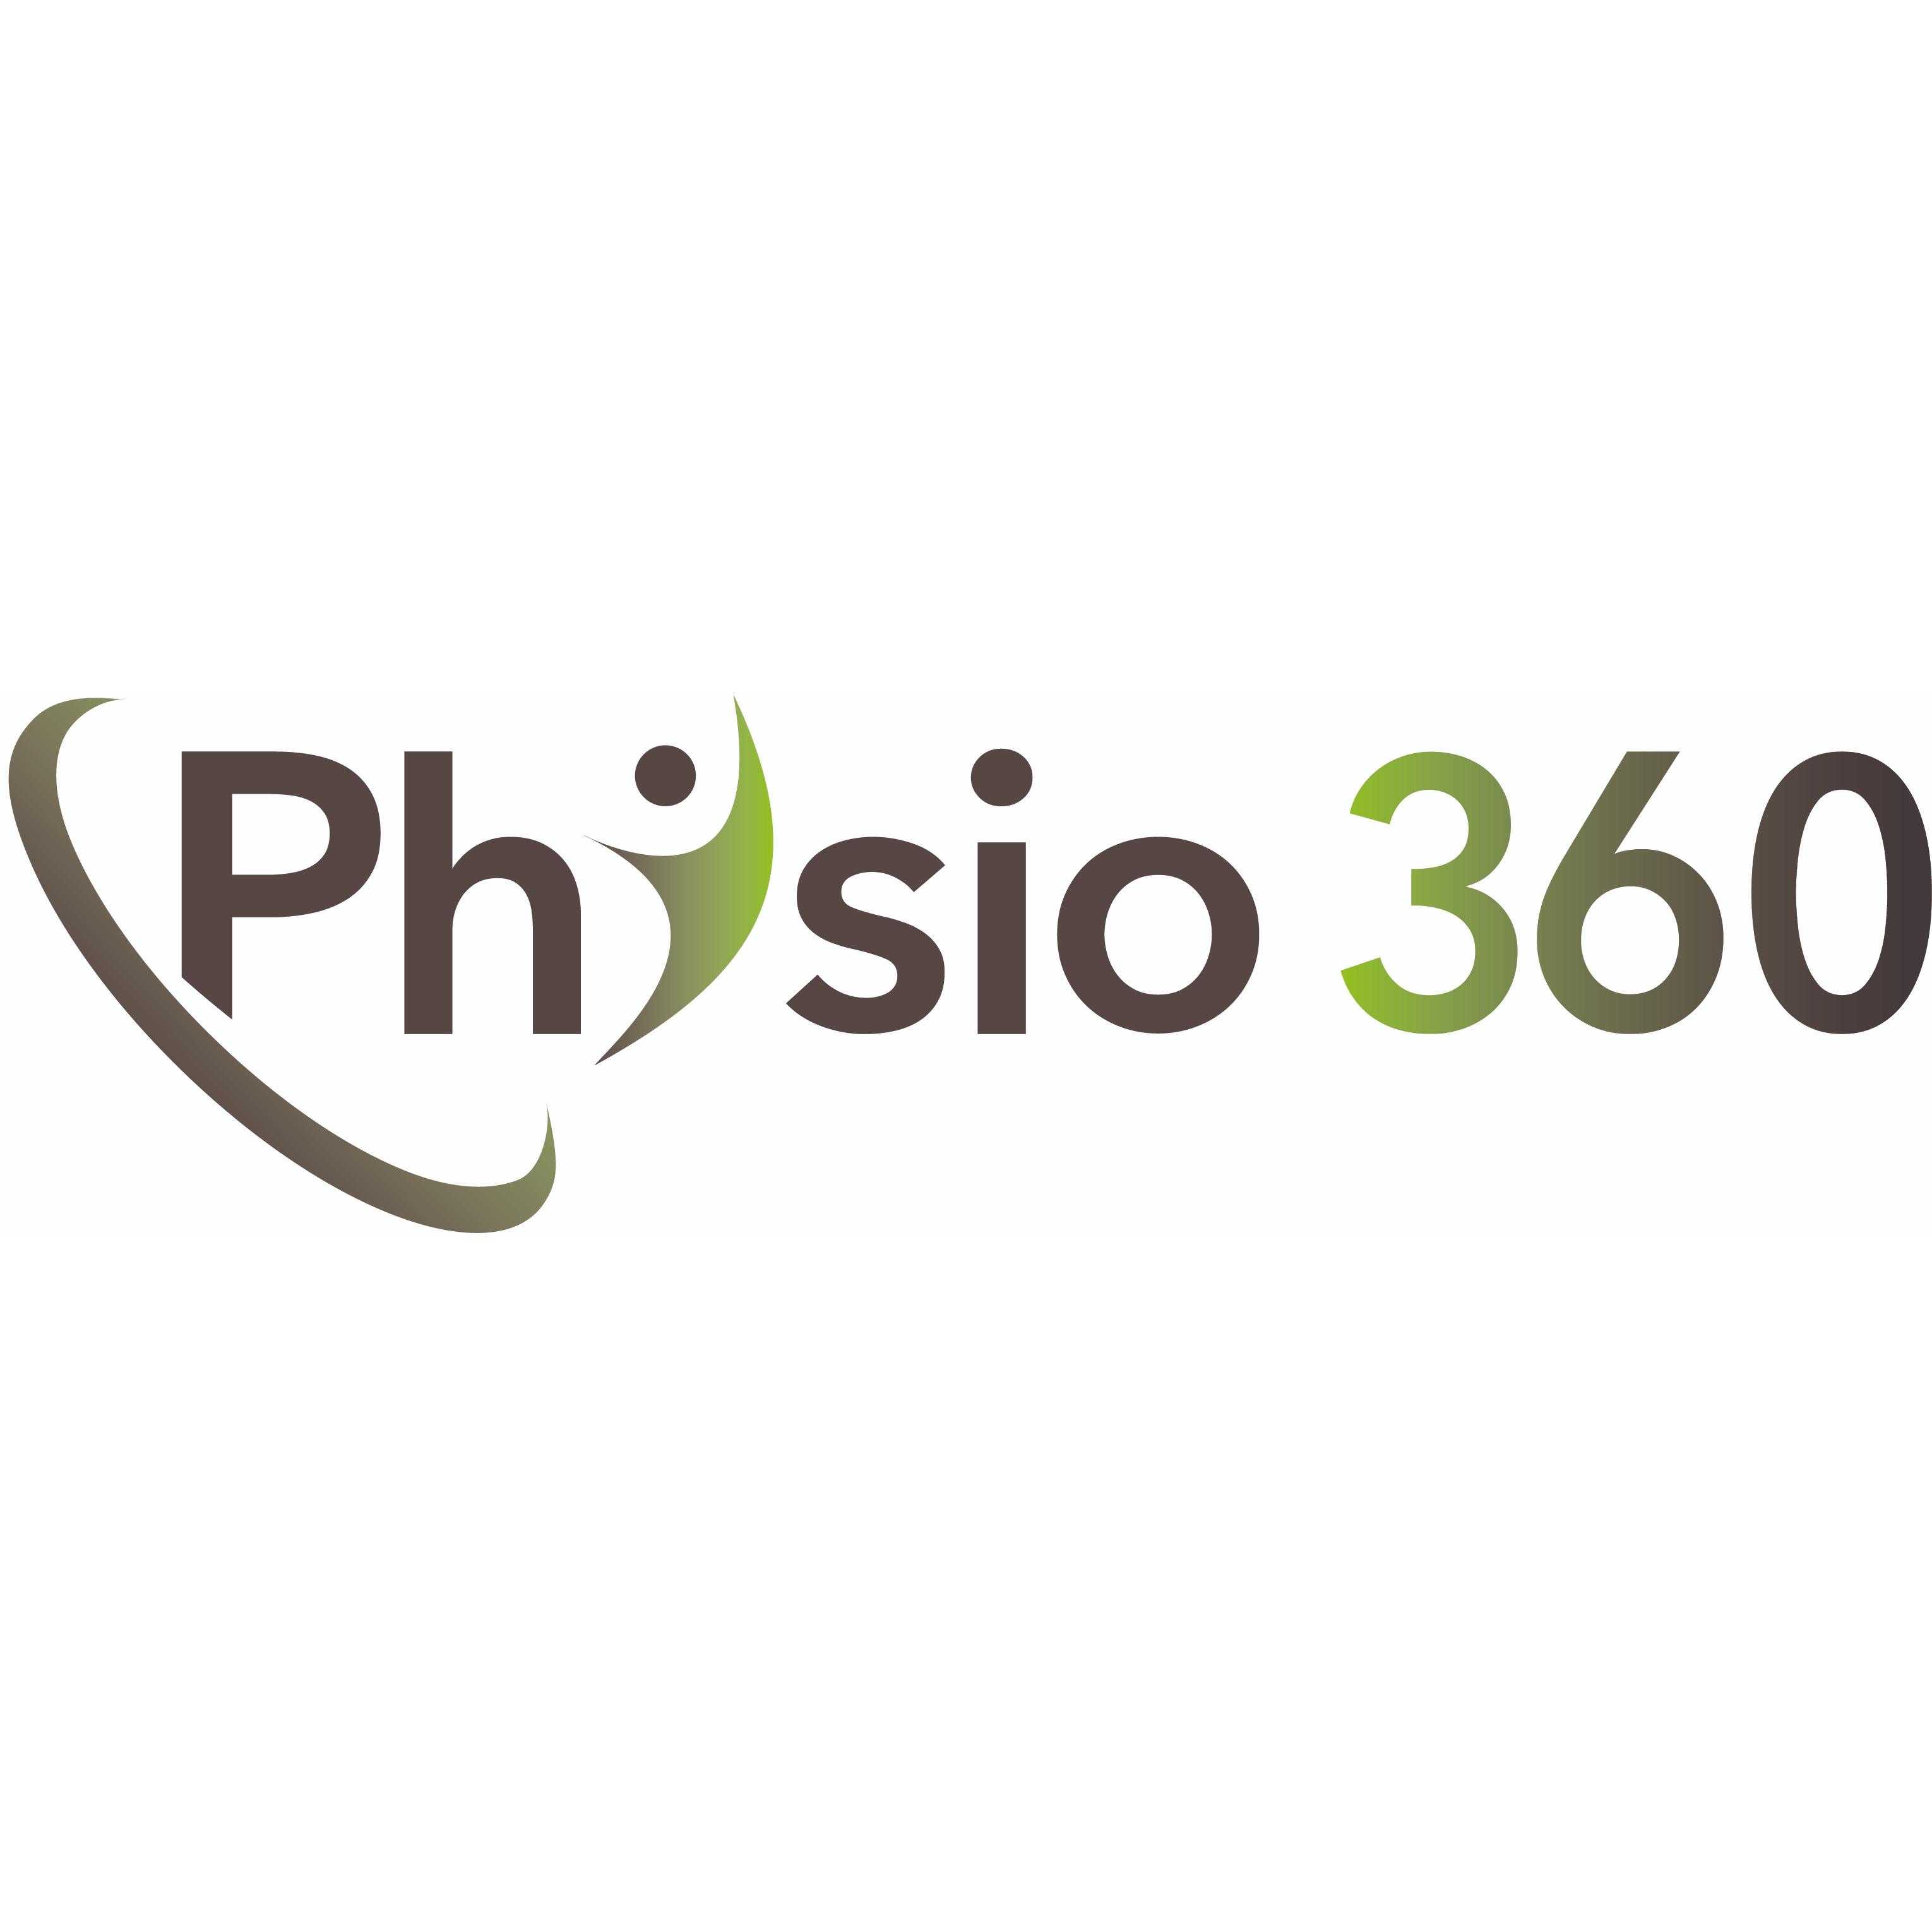 Physiotherapie - Physio 360 Josef Strobl